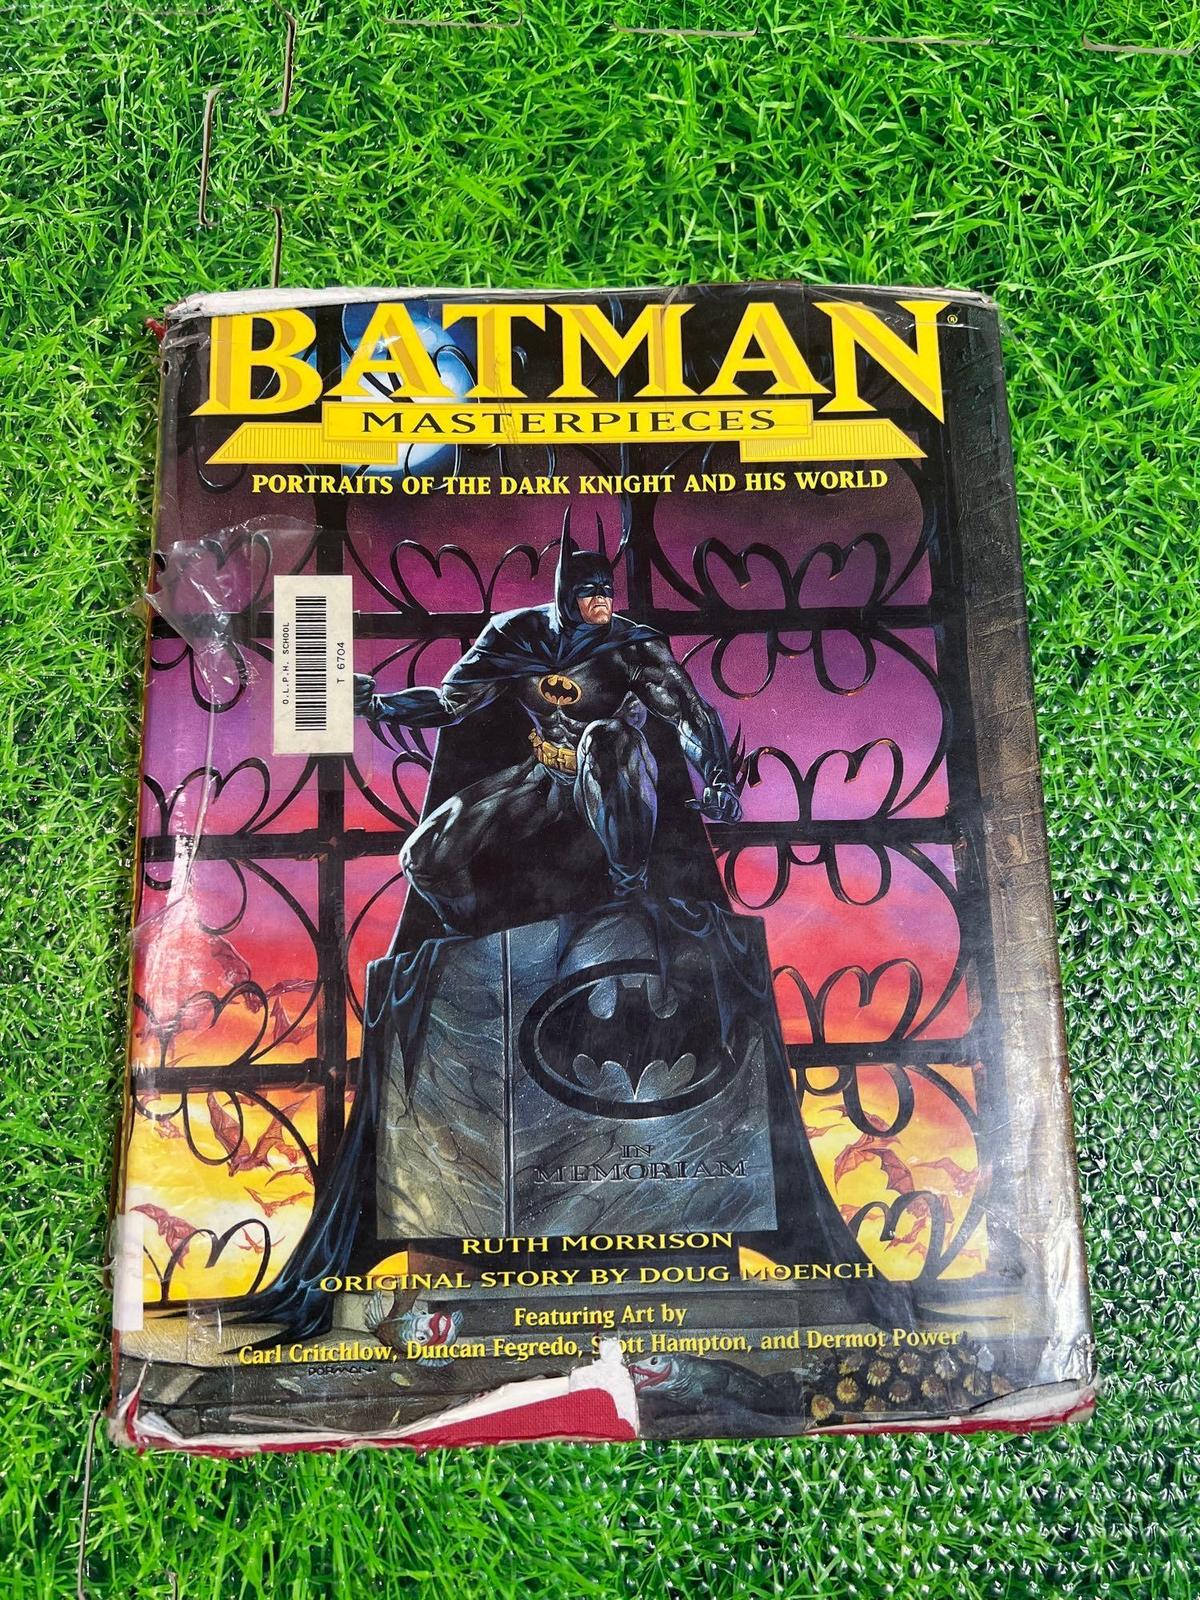 vintage batman masterpieces hardcover book